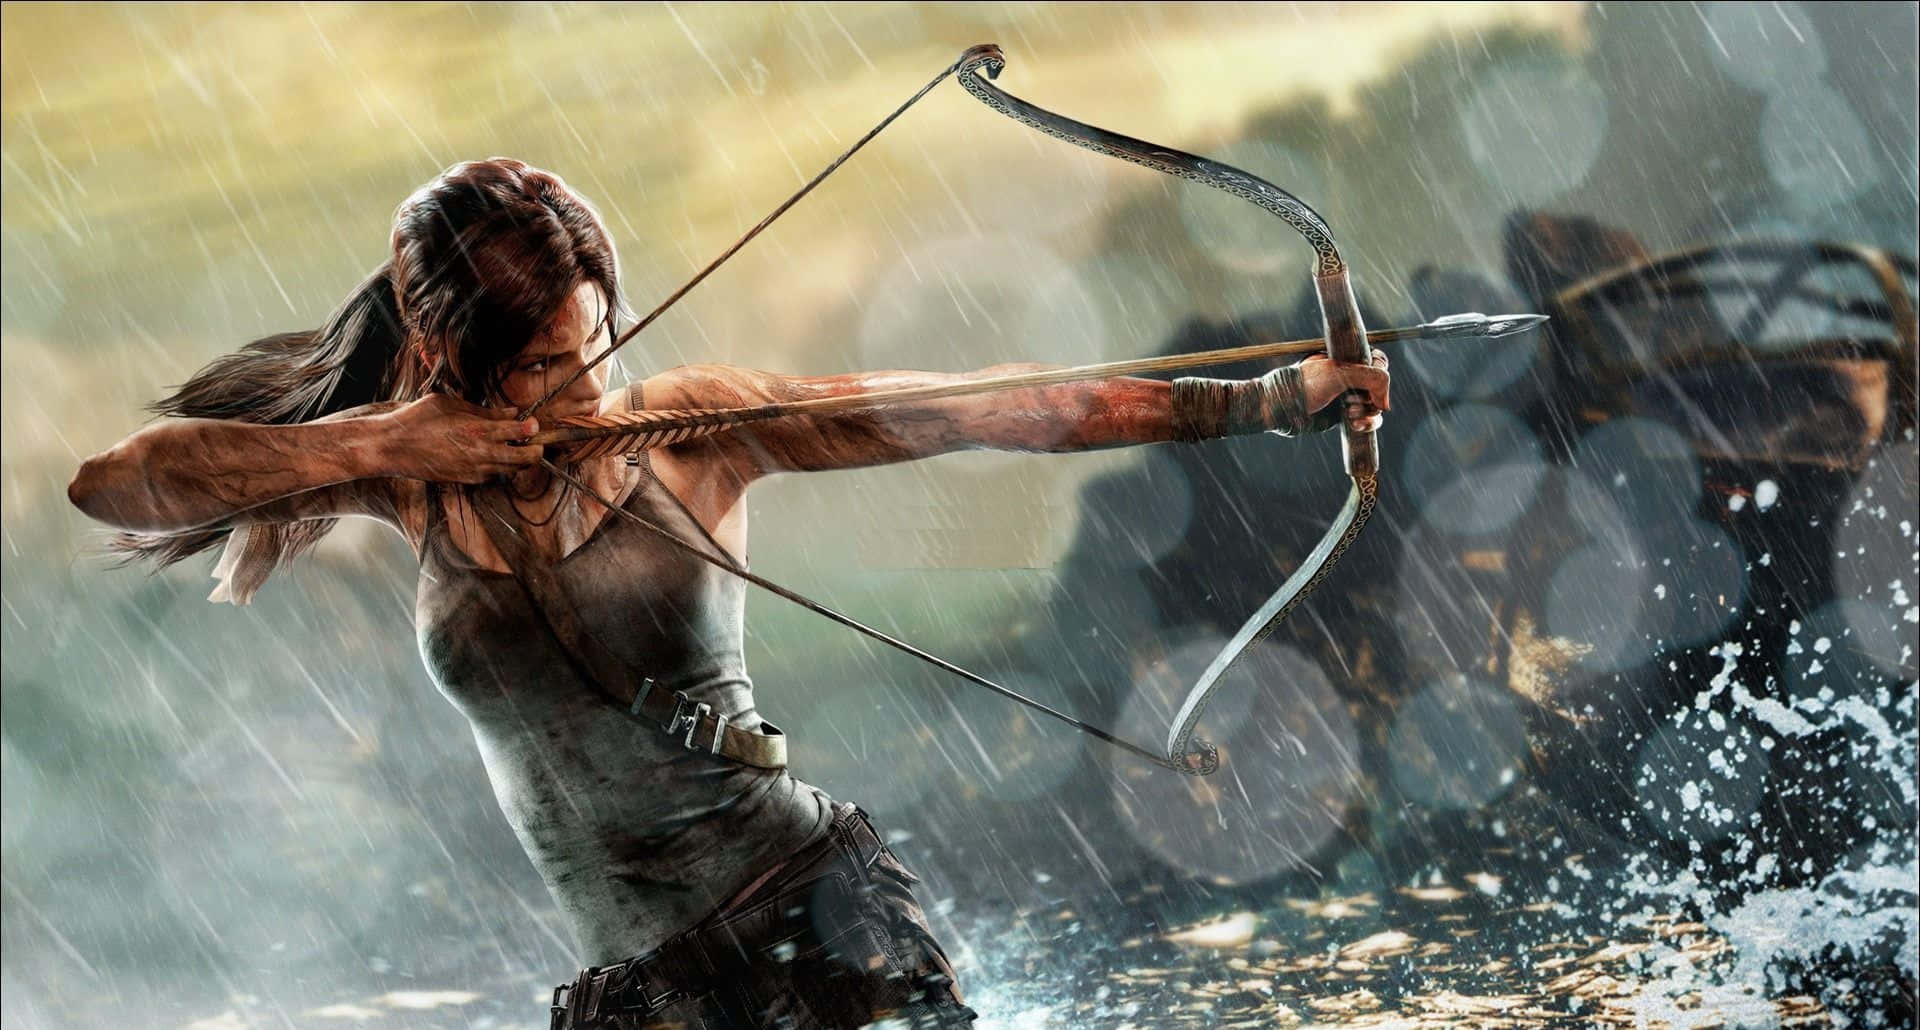 Laracroft Che Si Allena Al Tiro Con L'arco In Mezzo Alla Pioggia 1920x1080 Sfondo Di Rise Of The Tomb Raider